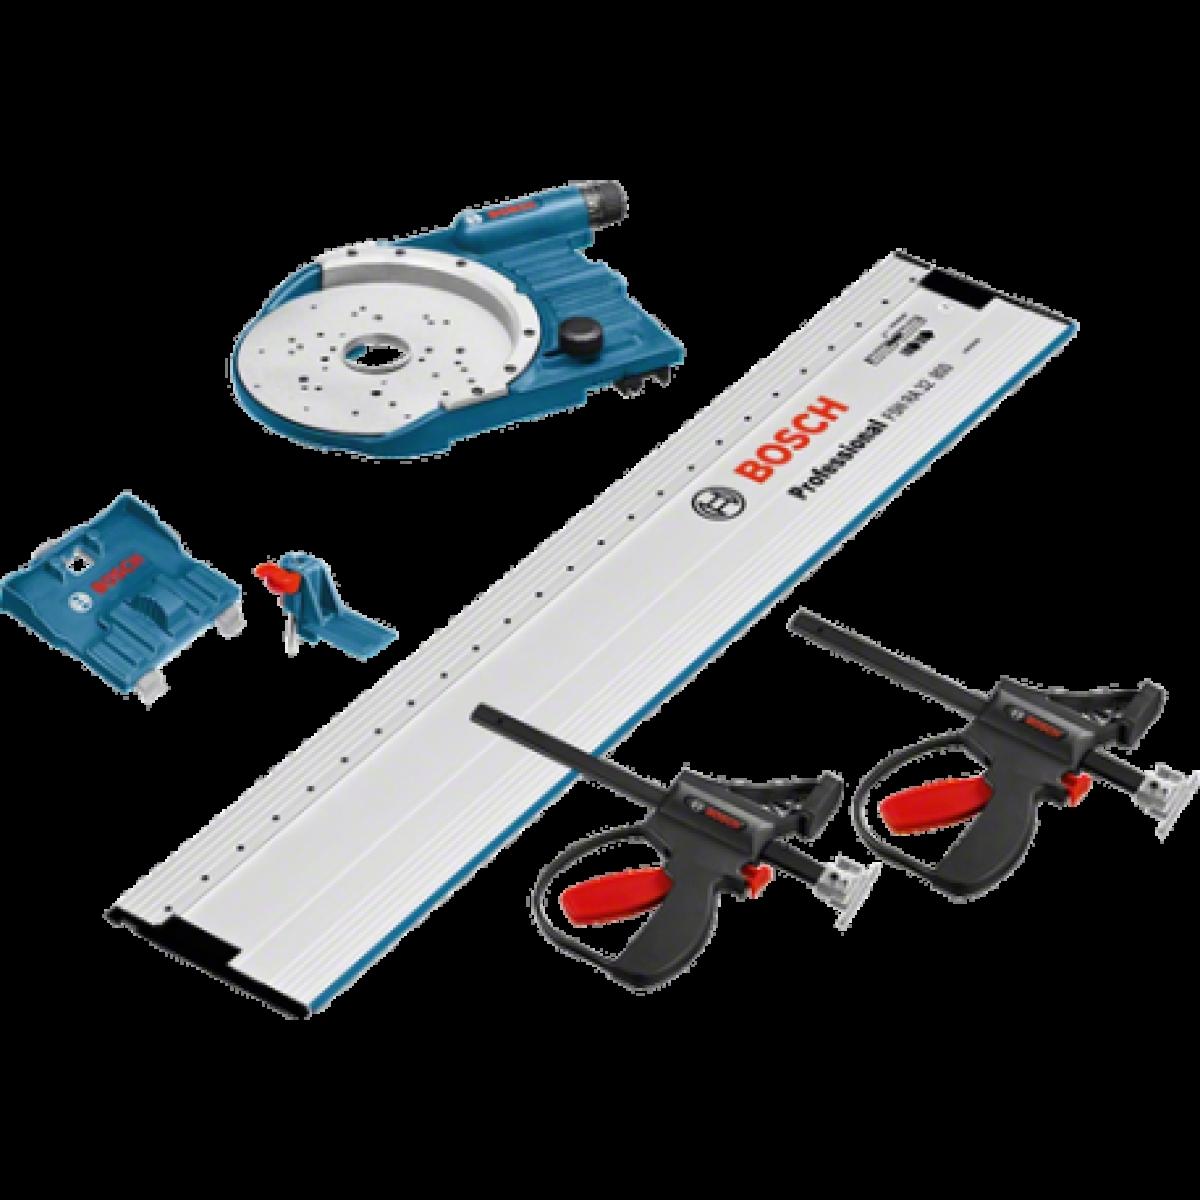 Bosch kit accessoires pour défonceuse - 1600a001t8 - Accessoires